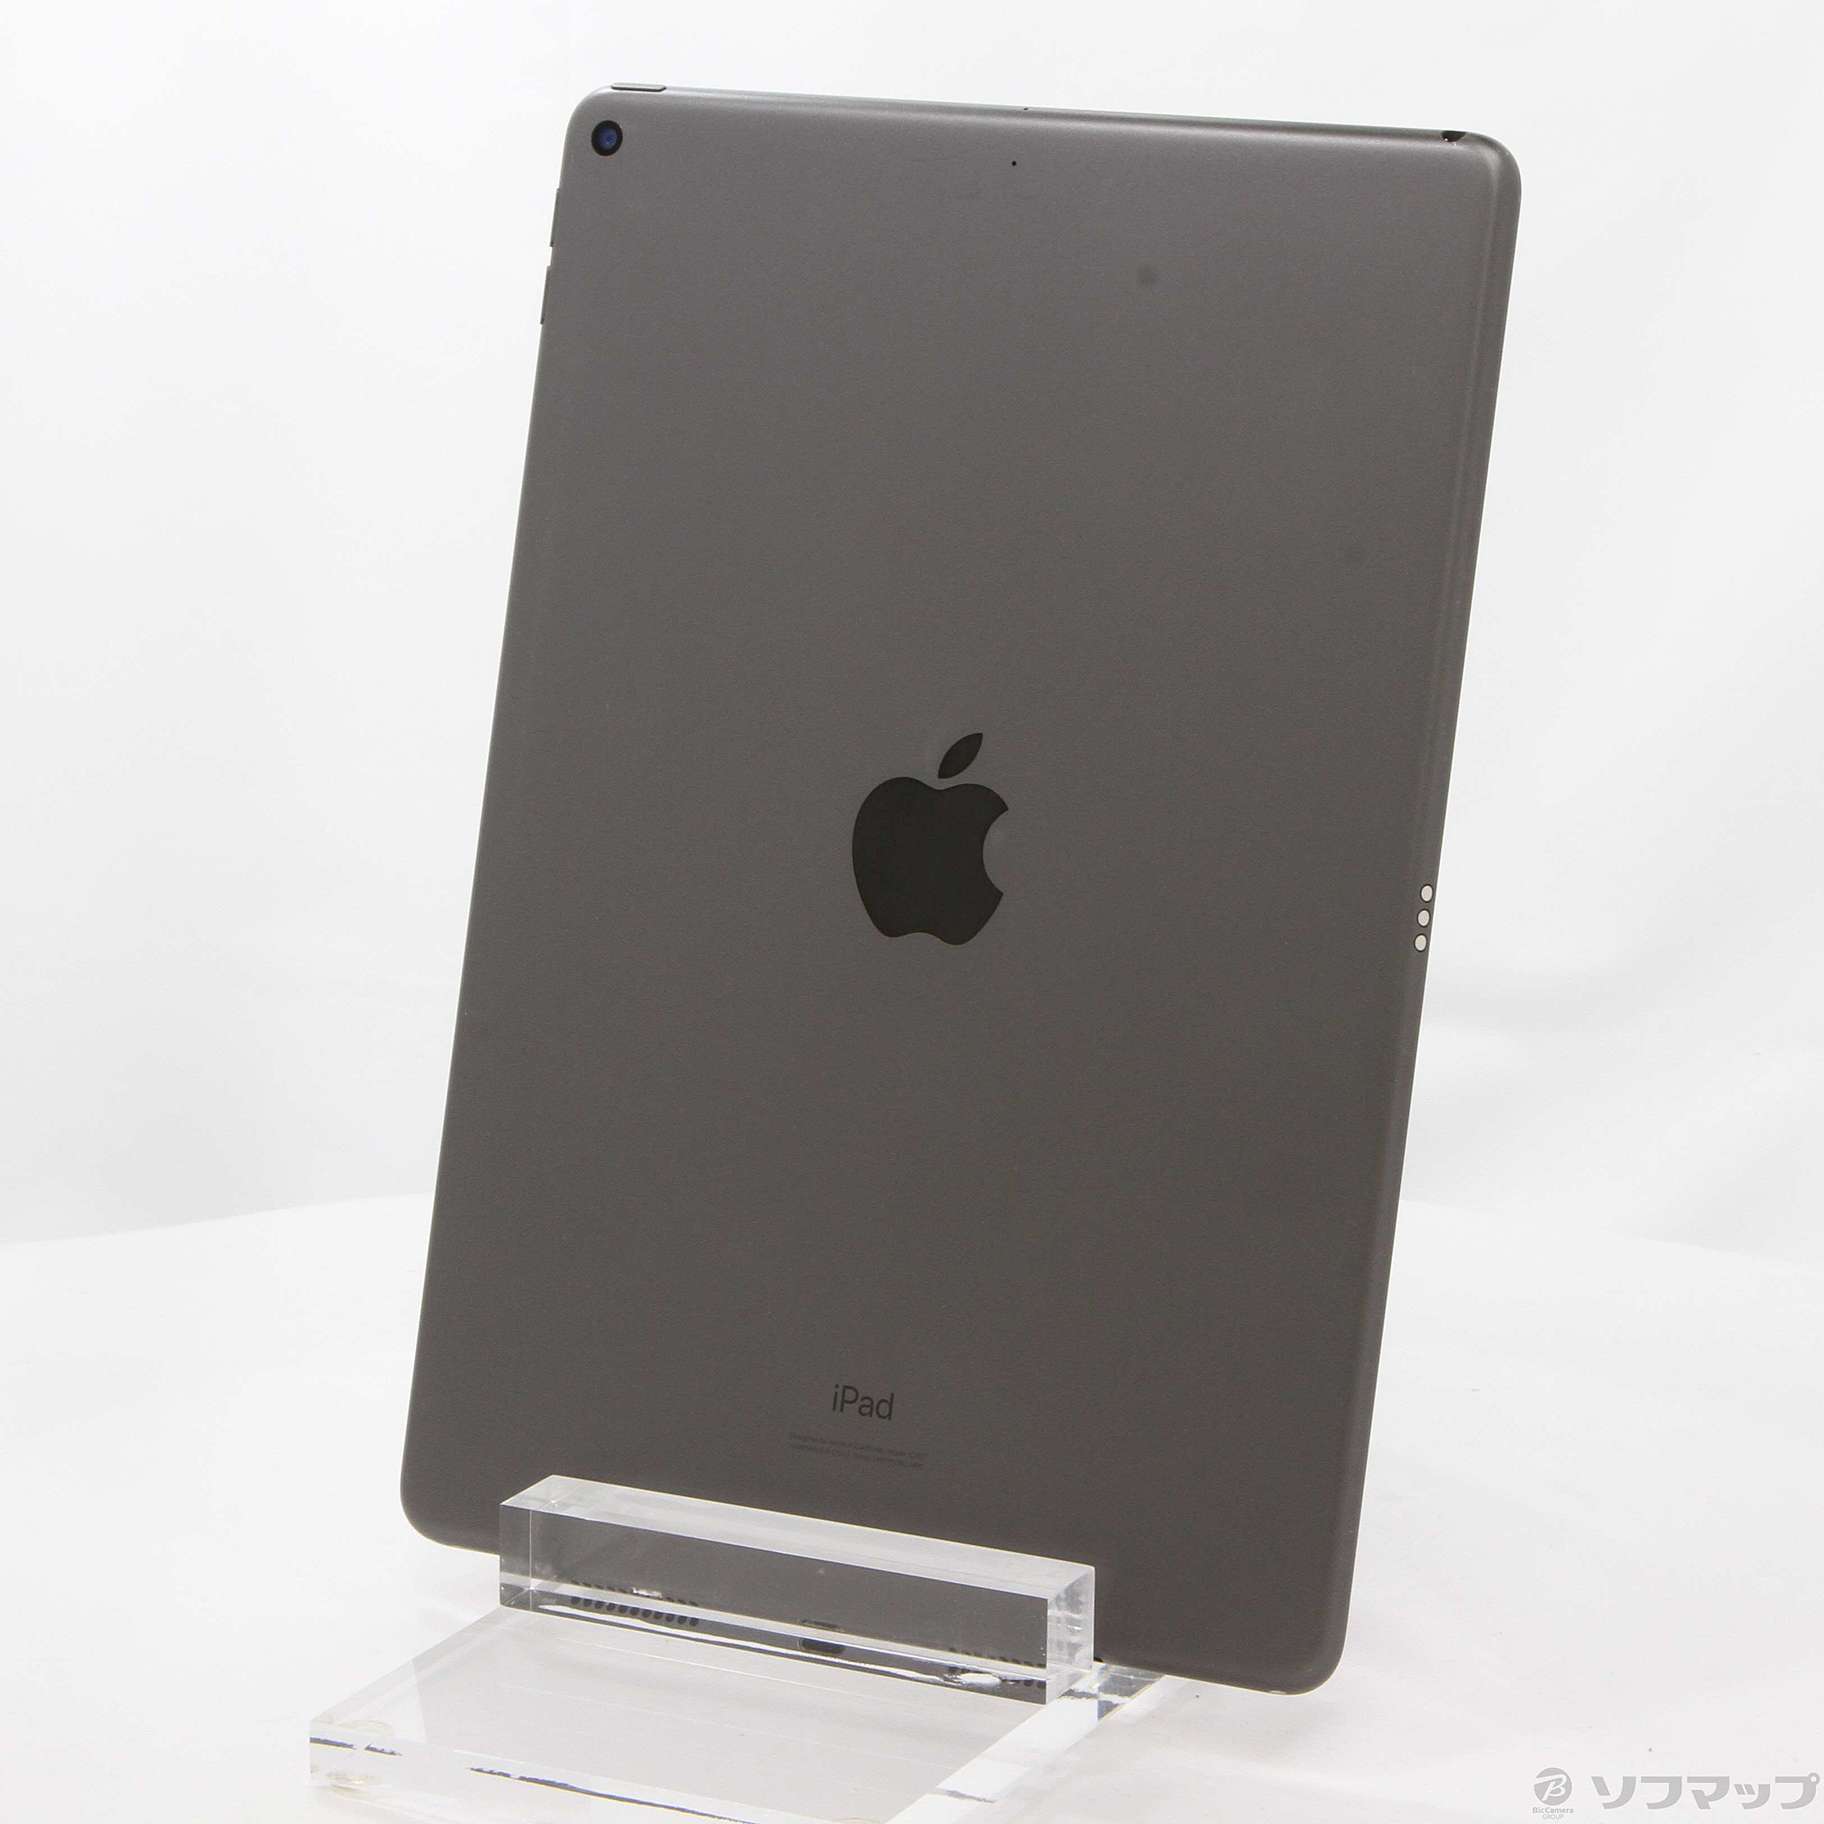 オンライン販売店舗 Apple iPad スペースグレー WiFi 64GB (第3世代) Air タブレット